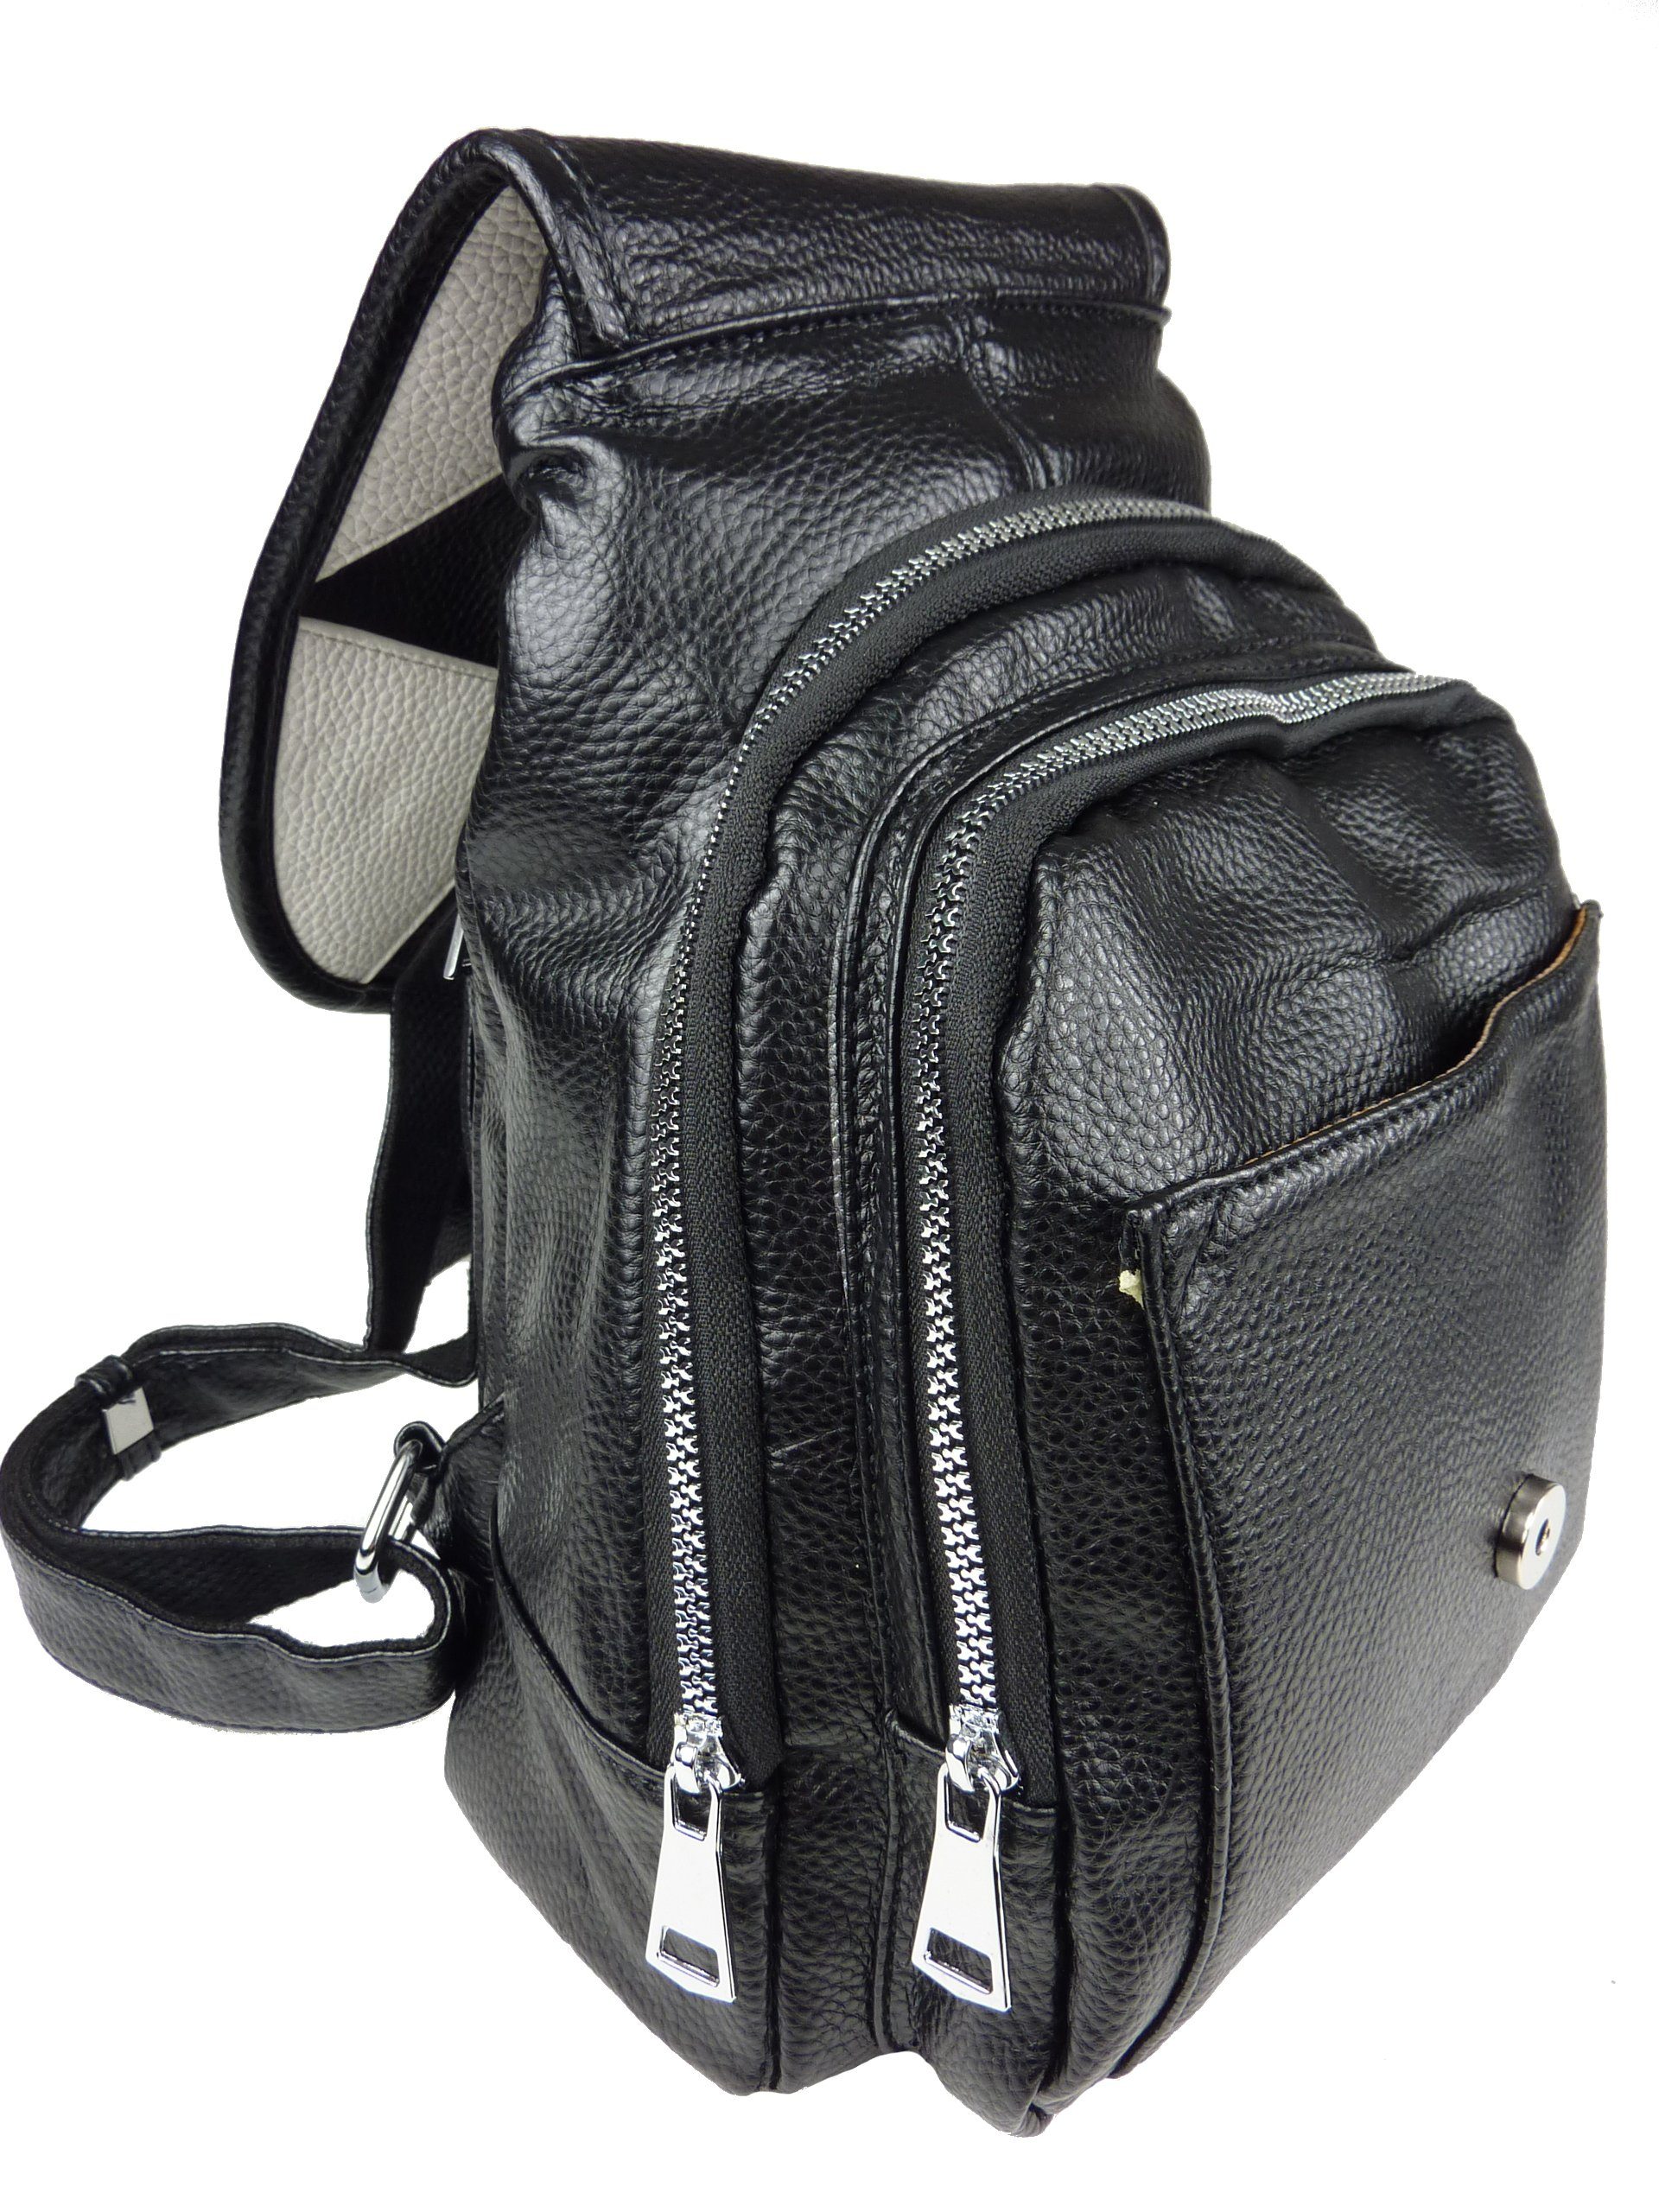 Taschen4life Schultertasche Damen Rucksack 069, schwarz - 83-6-24 modernes drops viele Fächer klassiche Design Rucksacktasche